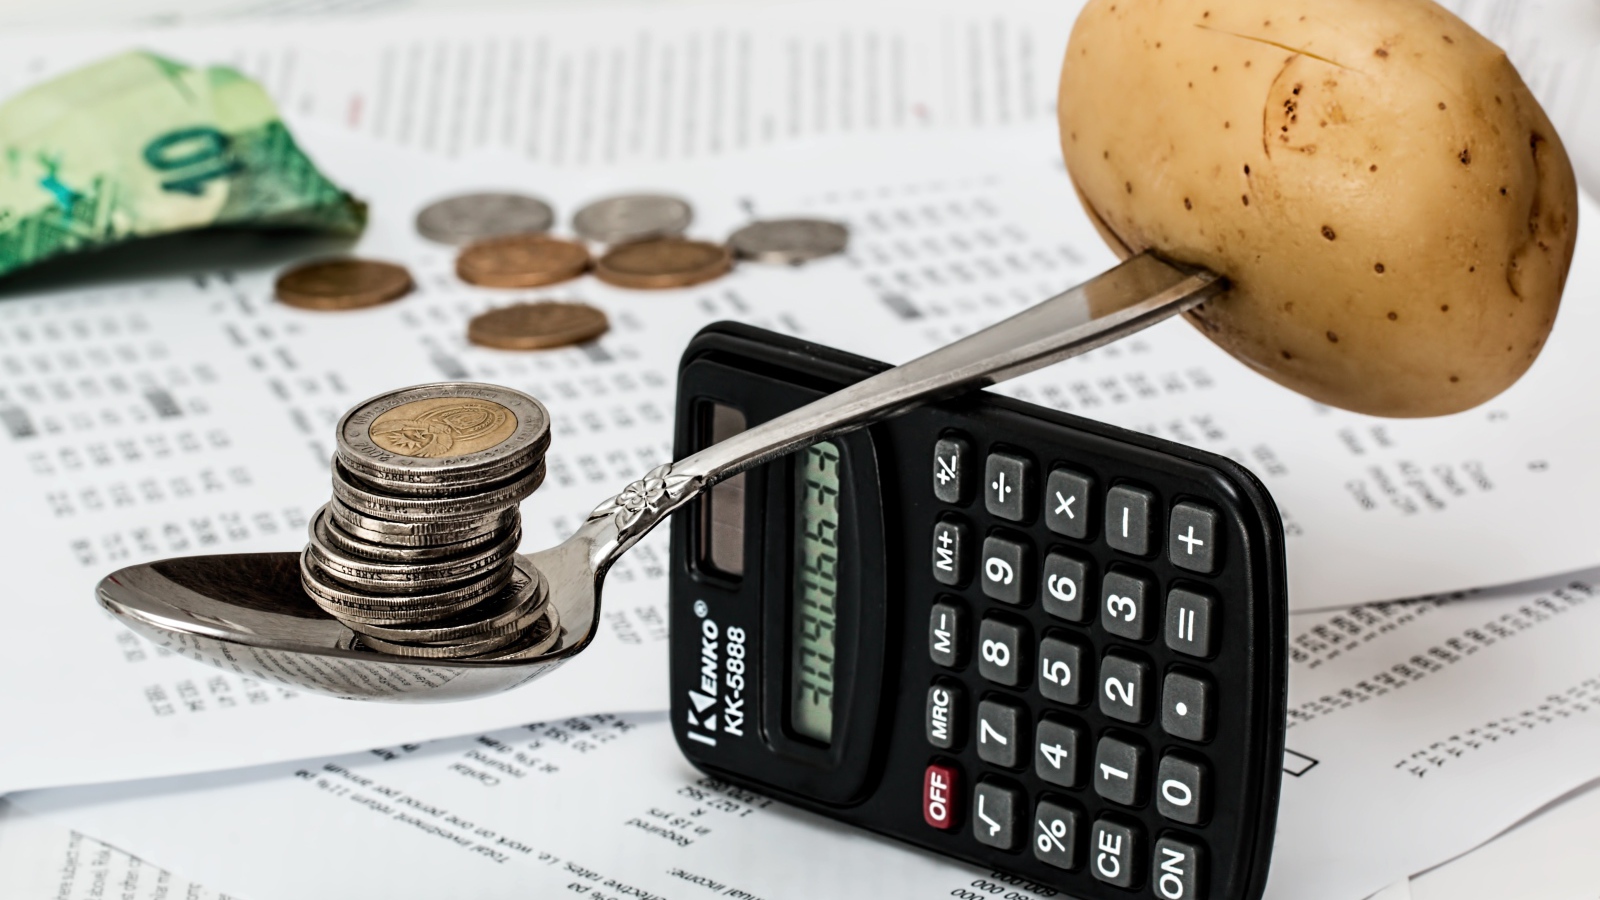 Весы из калькулятора и ложки с монетами и картофелем